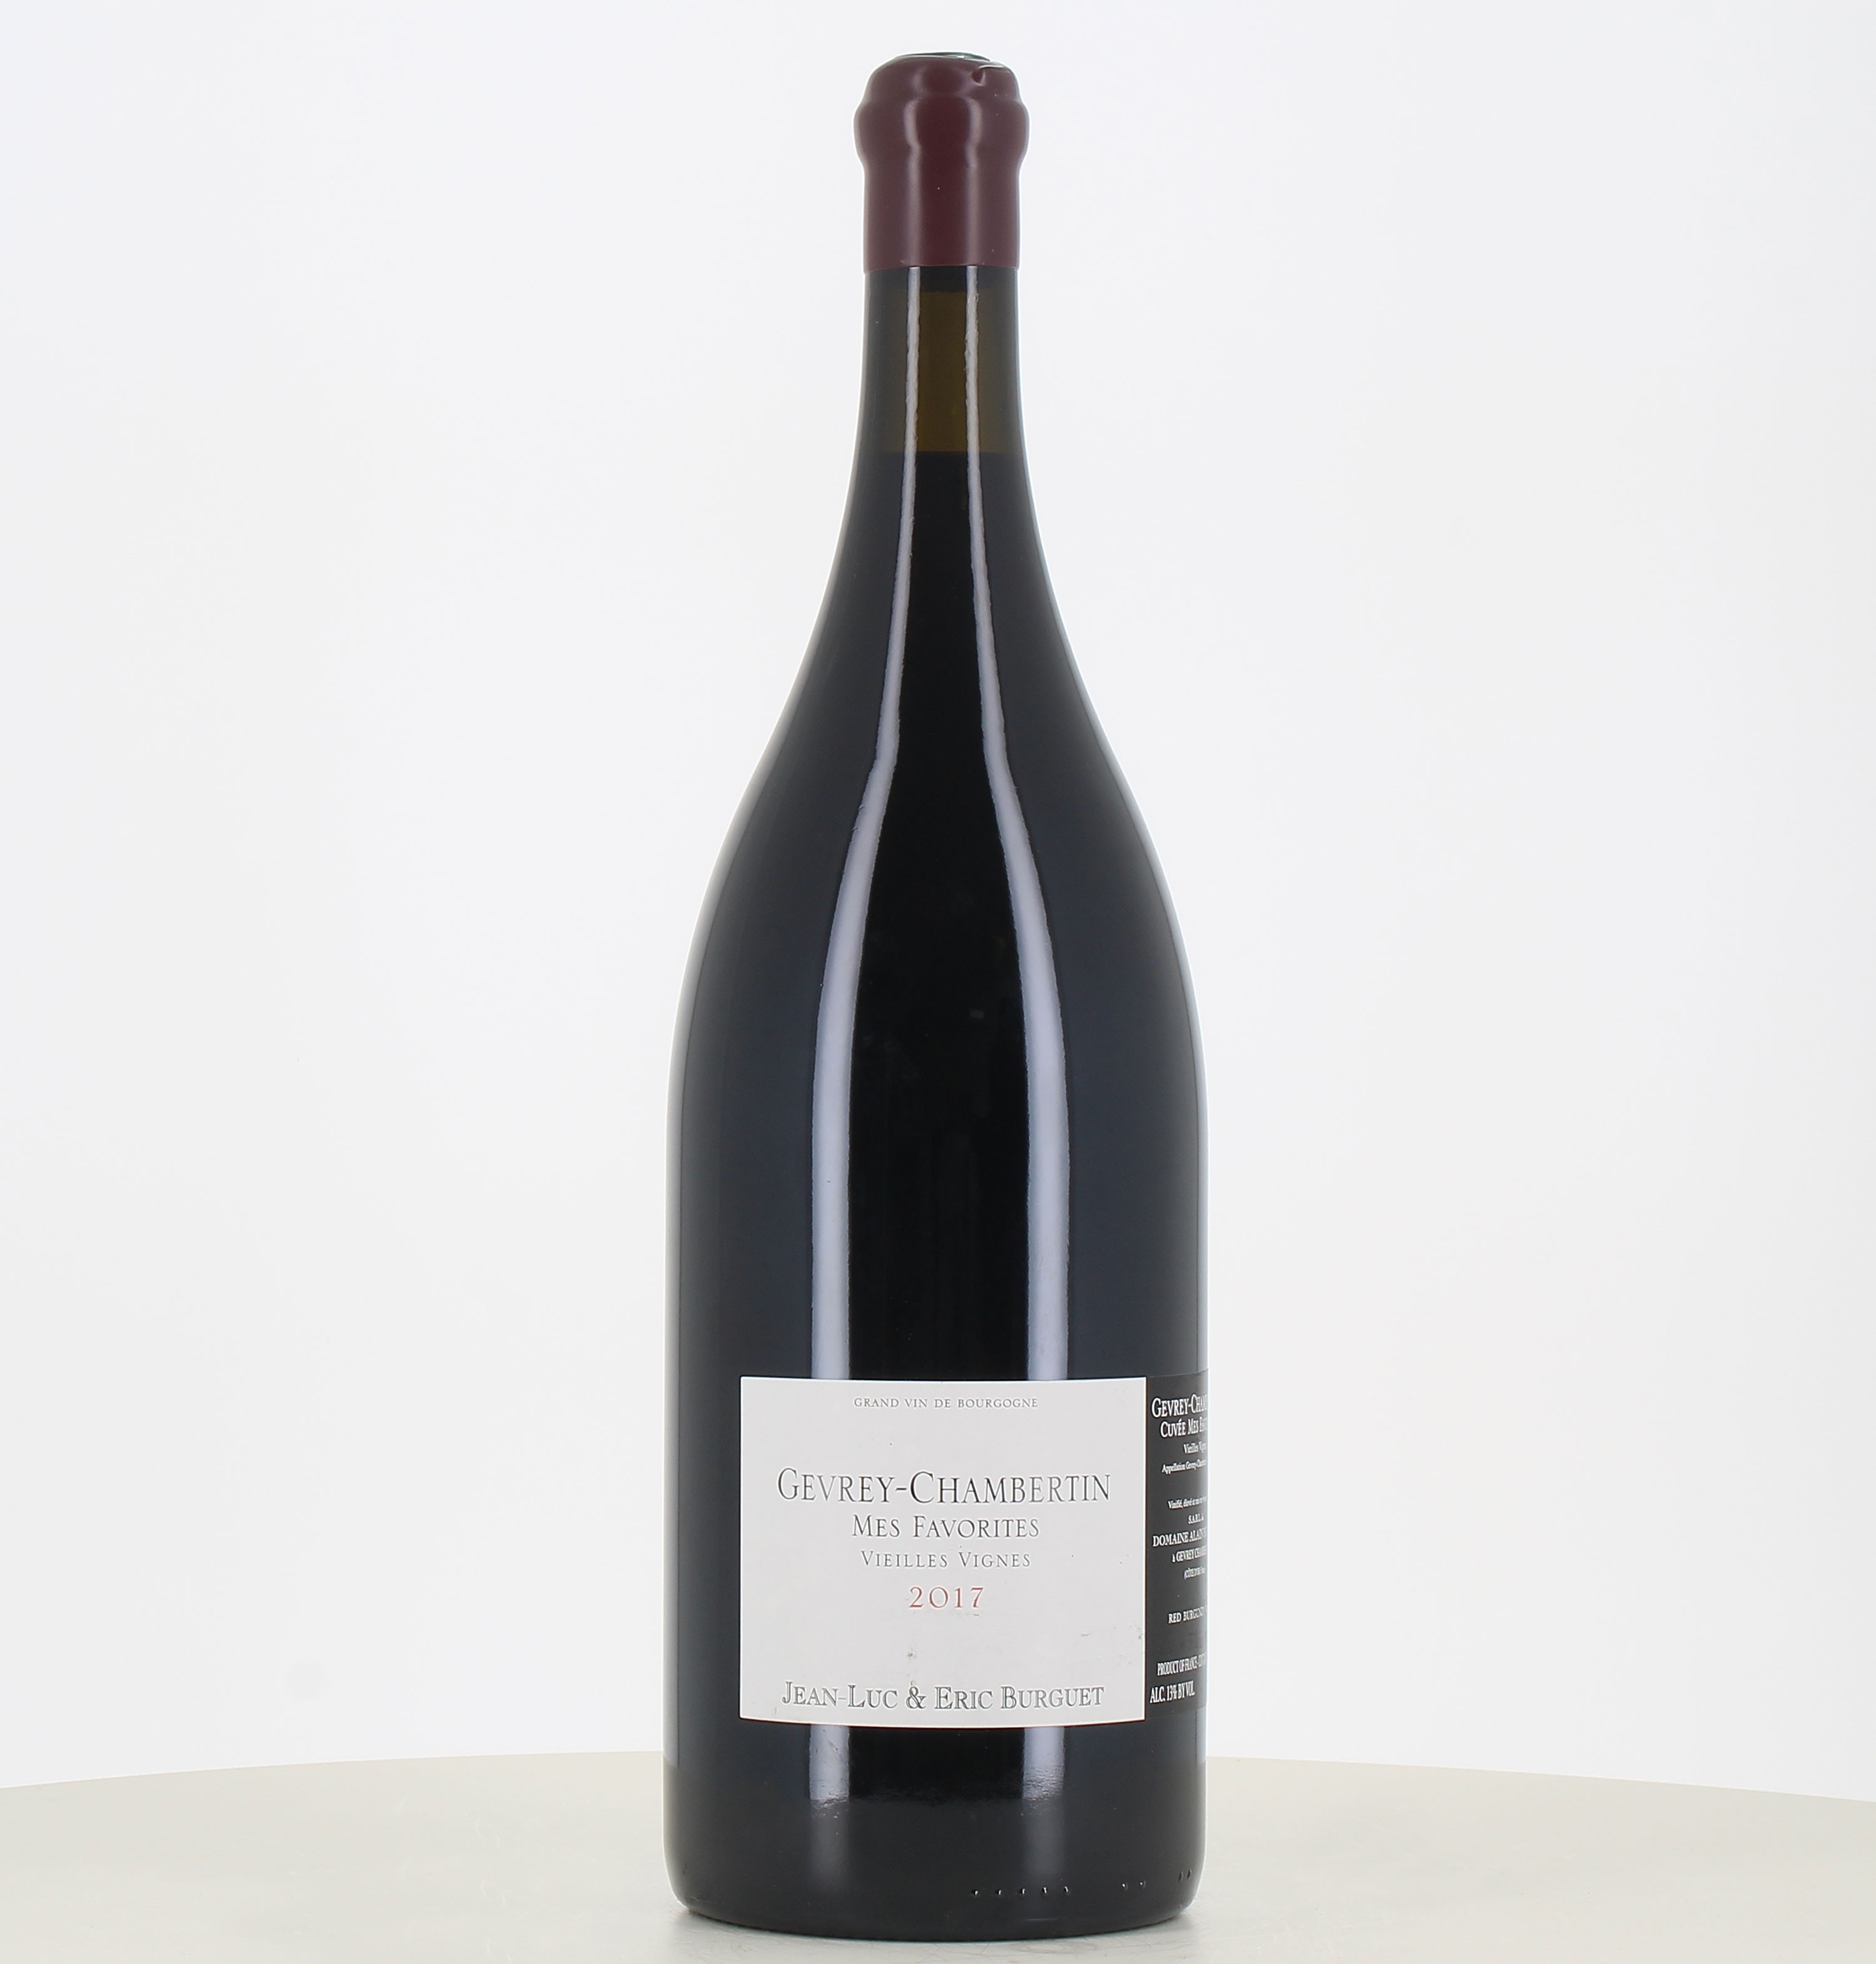 Jéroboam red wine Gevrey Chambertin cuvée Mes Favorites old vines 2017 from Burguet estate. 